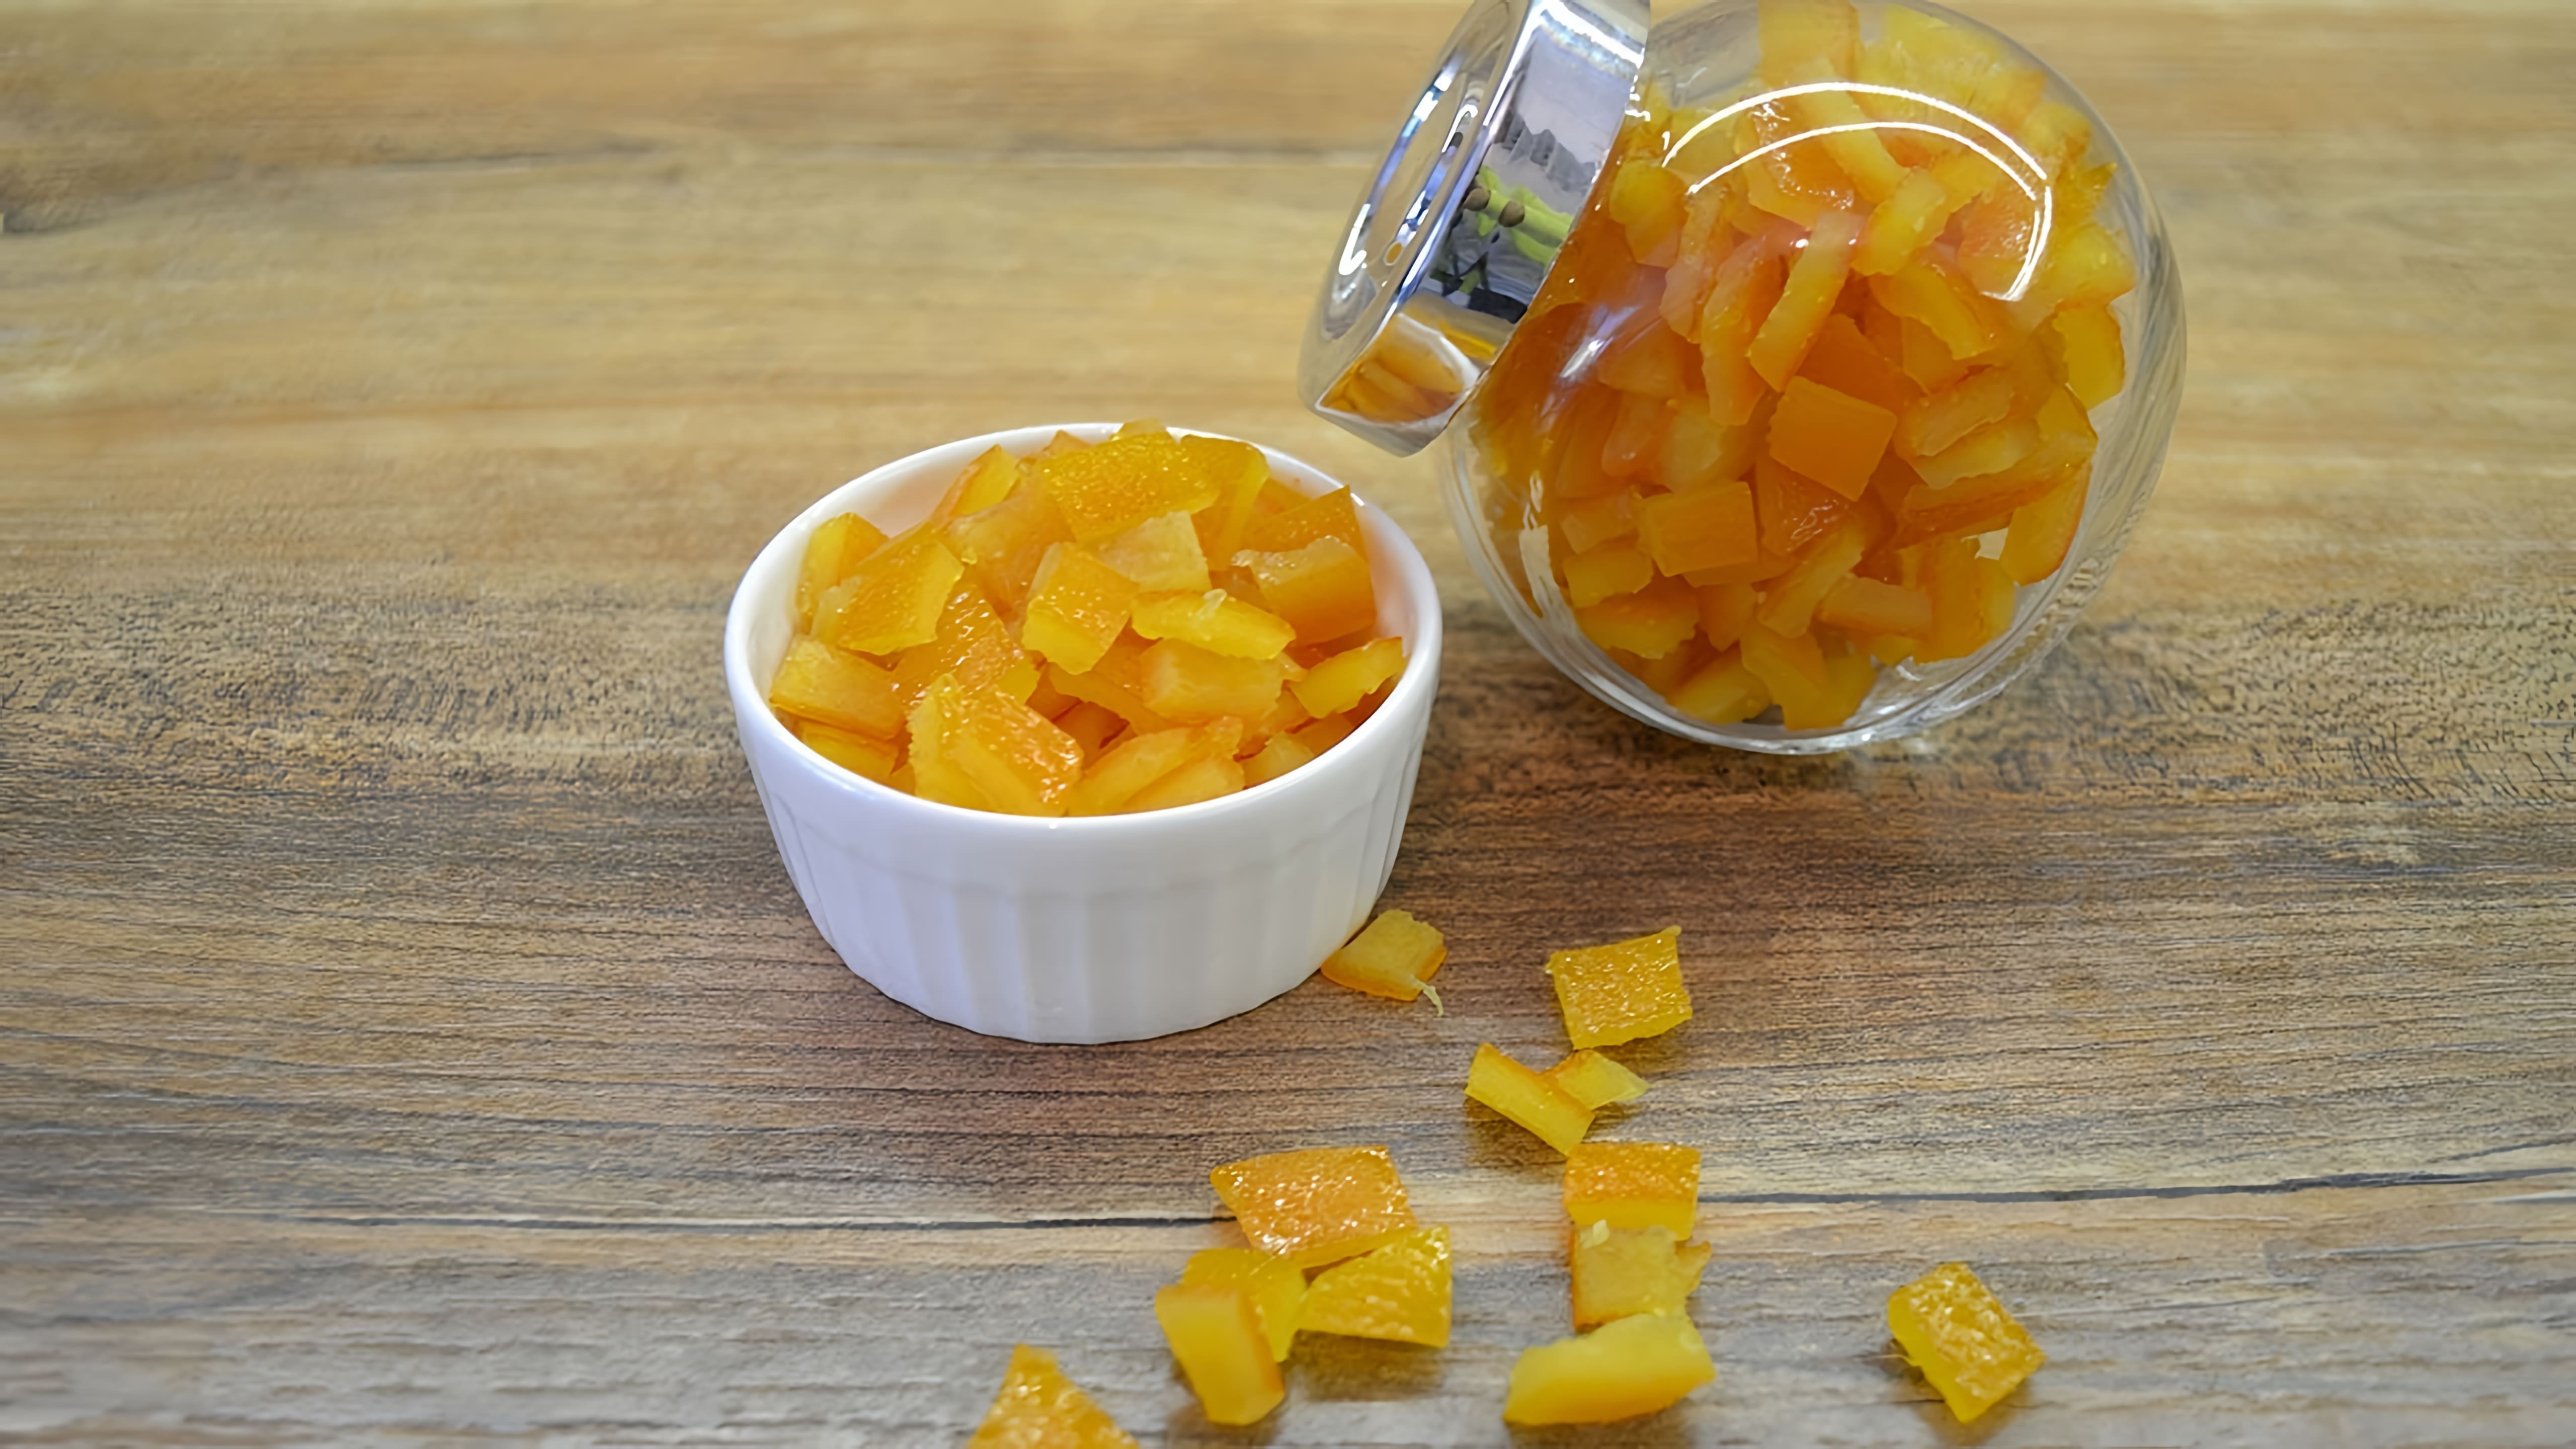 В этом видео демонстрируется простой рецепт приготовления апельсиновых цукатов